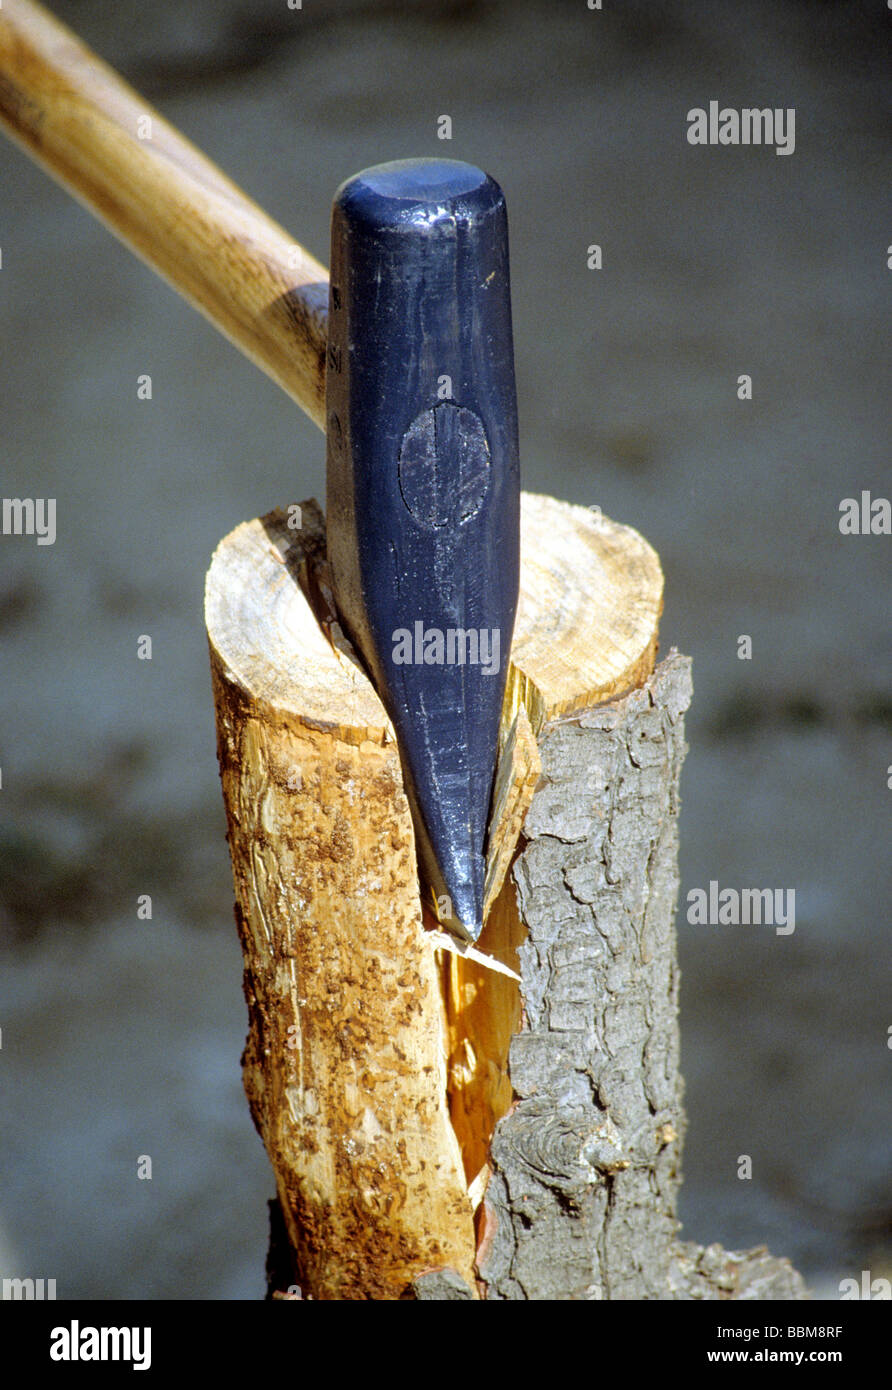 Axt Keil Dechsel Hammer Schlitten teilen Log Holz schneiden hacken Holz Baum Maschine Stockfoto